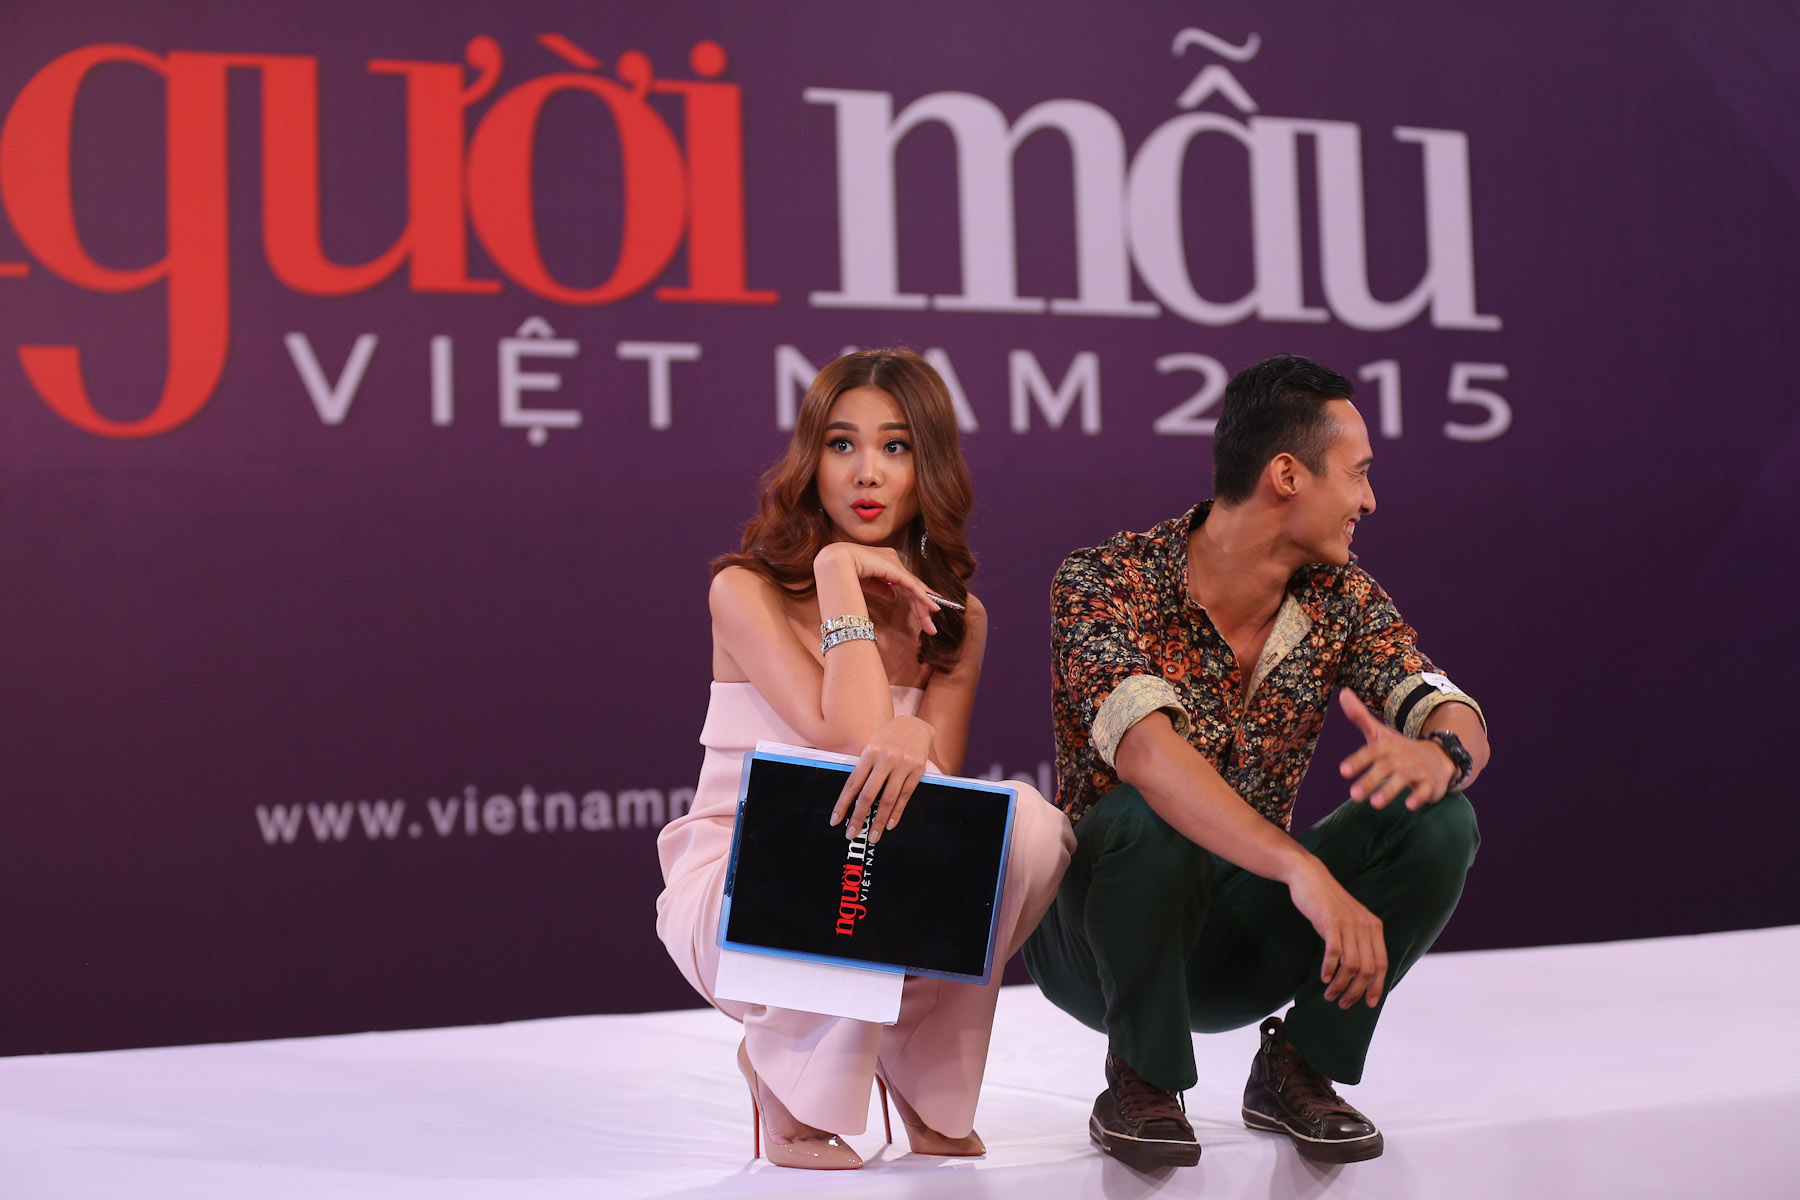 Đủ mọi biểu cảm đáng yêu của giám khảo Thanh Hằng trên “ghế nóng” VNNTM 2015 - Ảnh 8